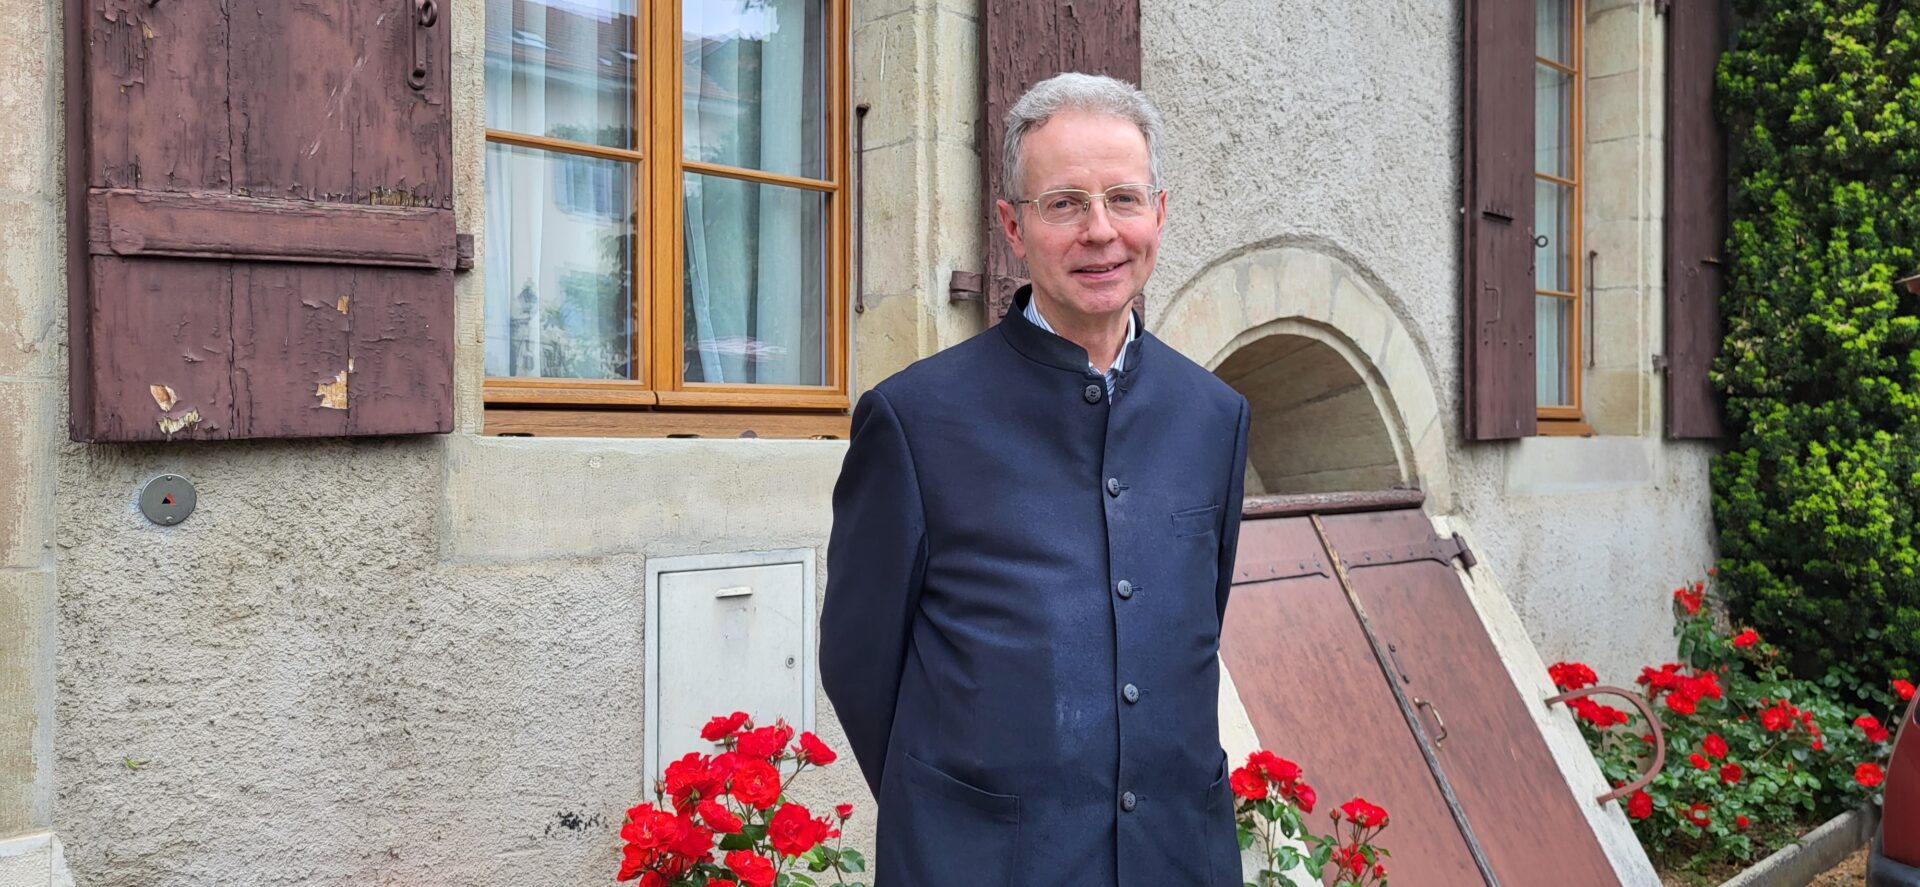 Stephan Rothlin sj, directeur de l'Institut Ricci de Macau, devant la maison des jésuites de Carouge (Genève), mai 2023 | © Lucienne Bittar